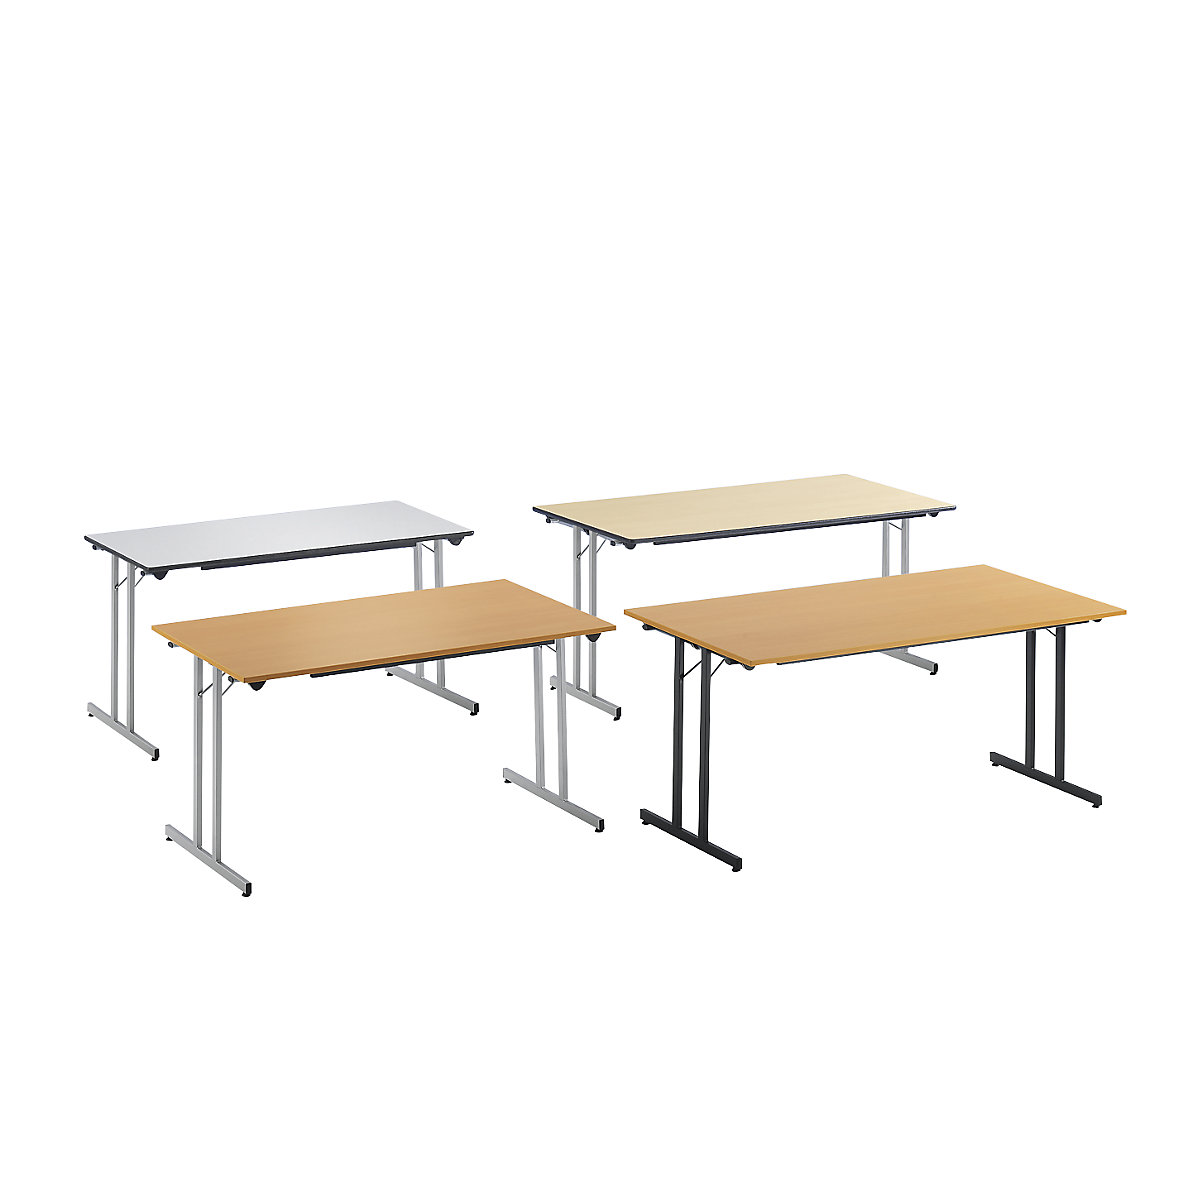 Sklápací stôl STANDARD, štvorhranný podstavec so skrutkami na vyrovnanie výšky podlahy, 1200 x 600 mm, podstavec strieborná, doska vzor javor-1